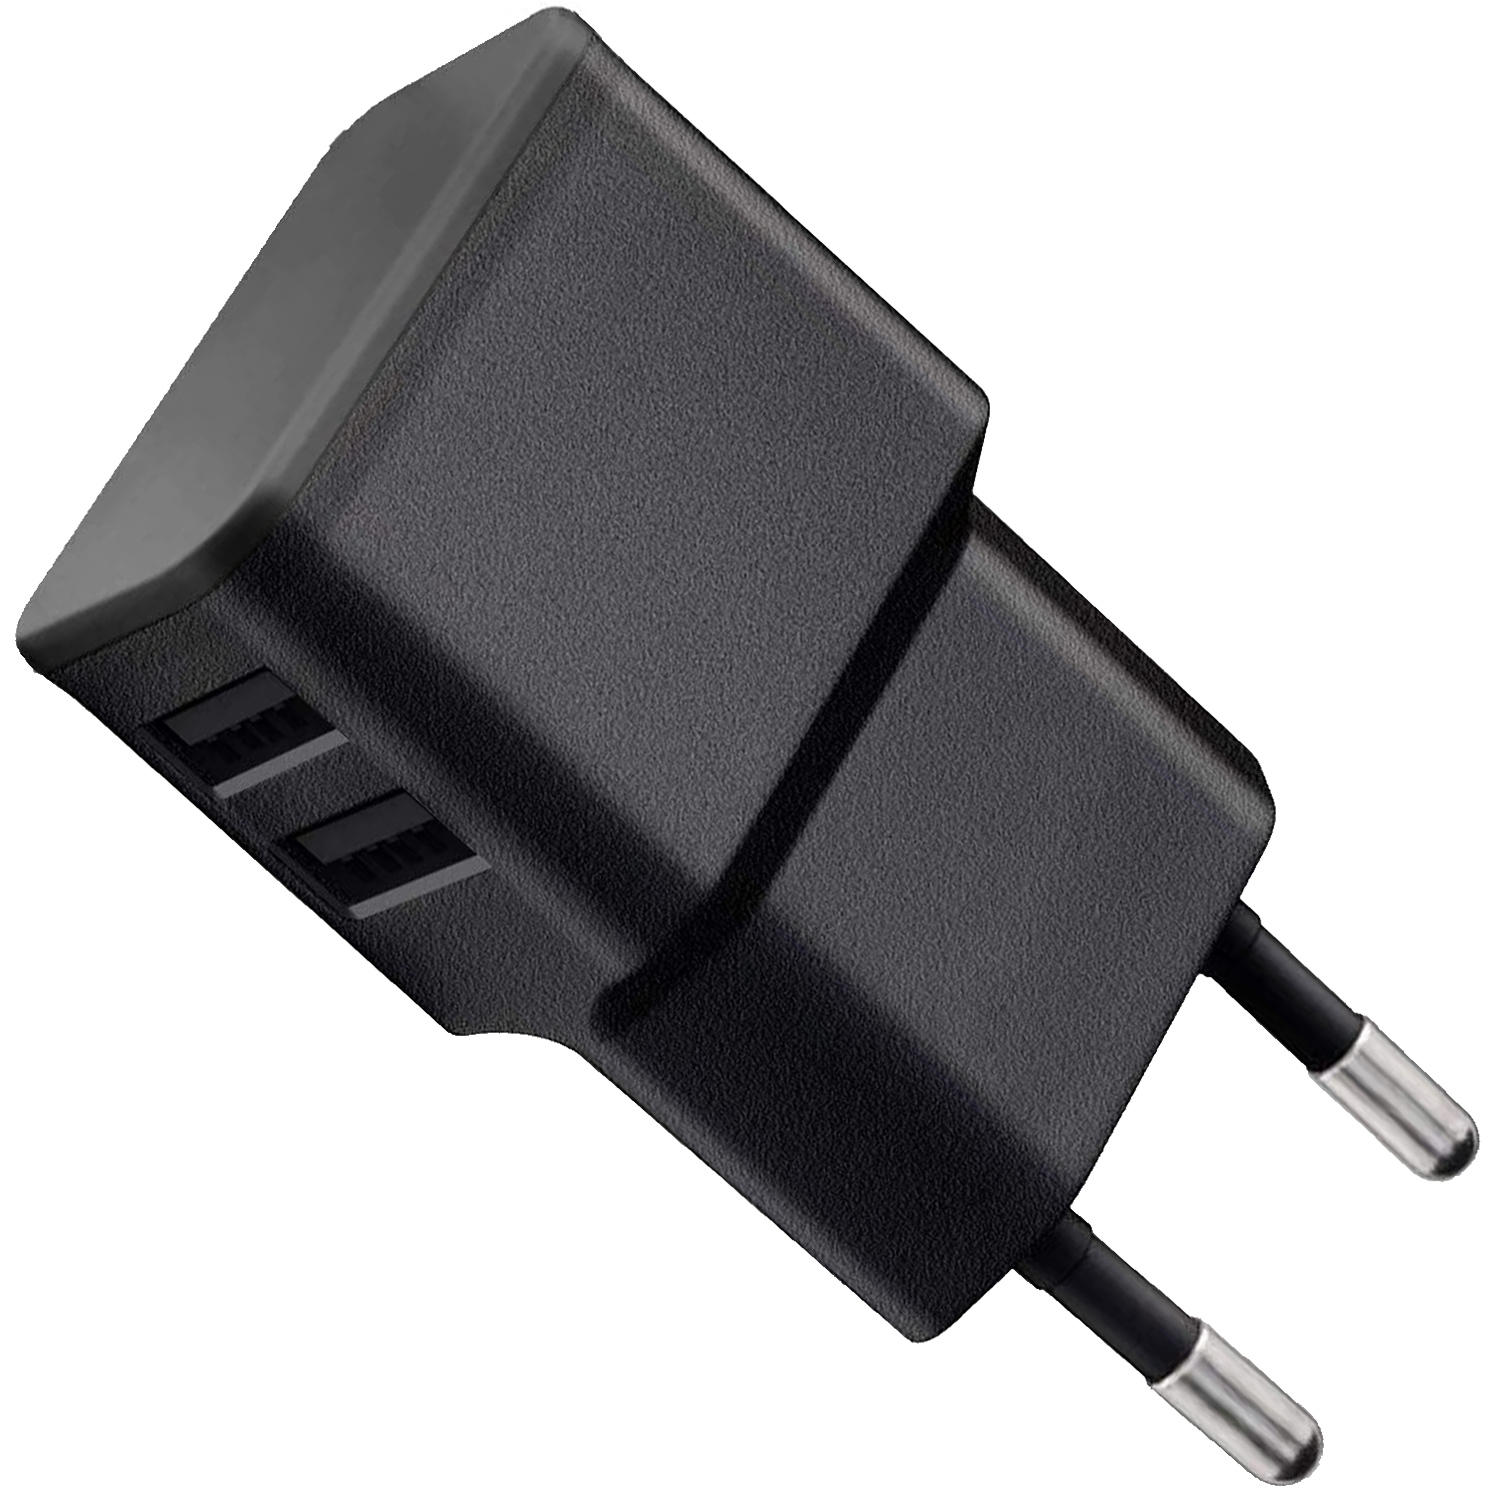 WICKED CHILI Dual USB-A Netzteil USB Sonos Roam, USB-C Kabel für USB (2.4A,12W) für Dual ersetzt auf 10W schwarz Ladegerät Netzteil